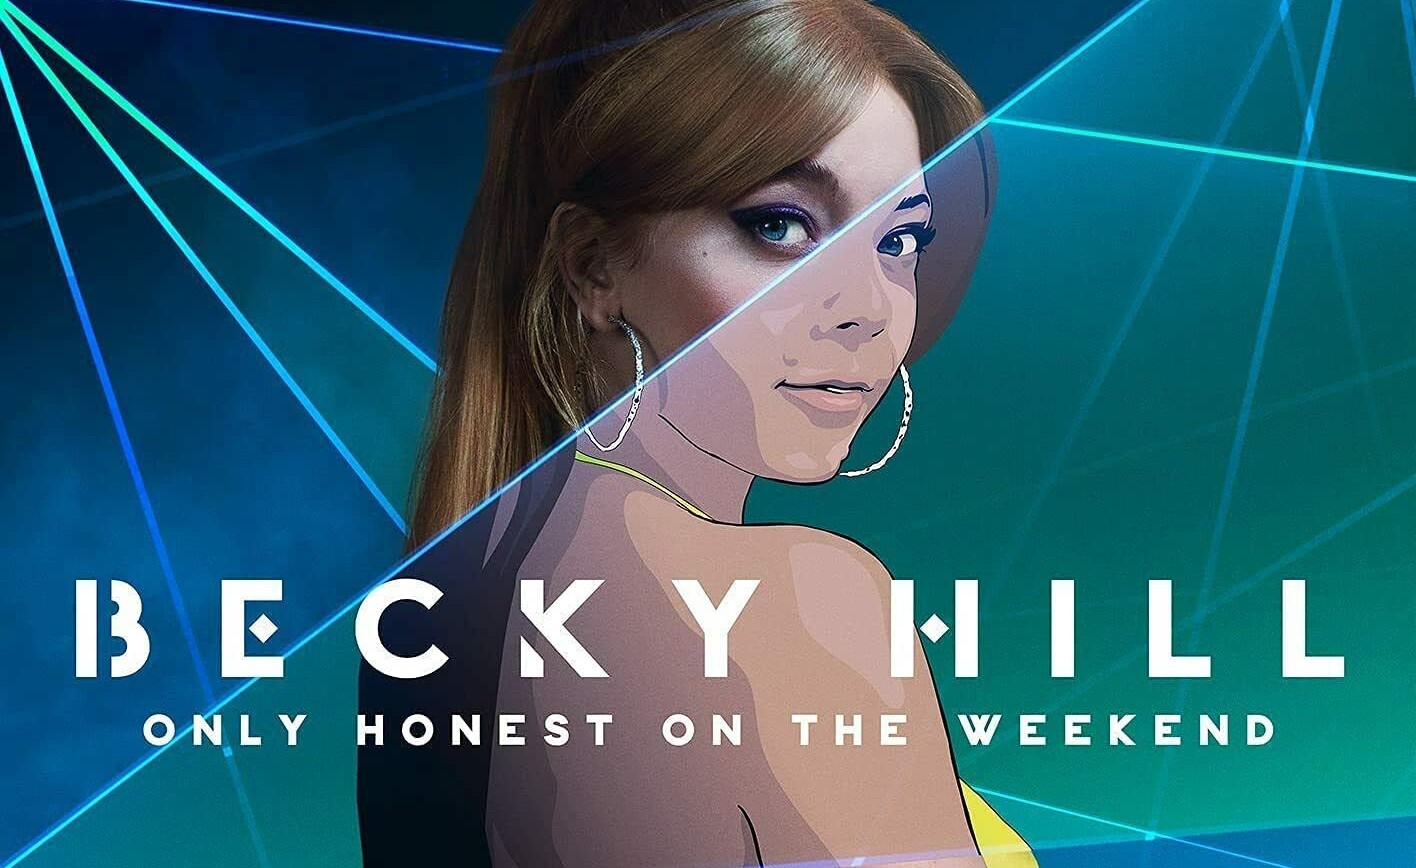 Musica classifica album, Becky Hill nella top ten